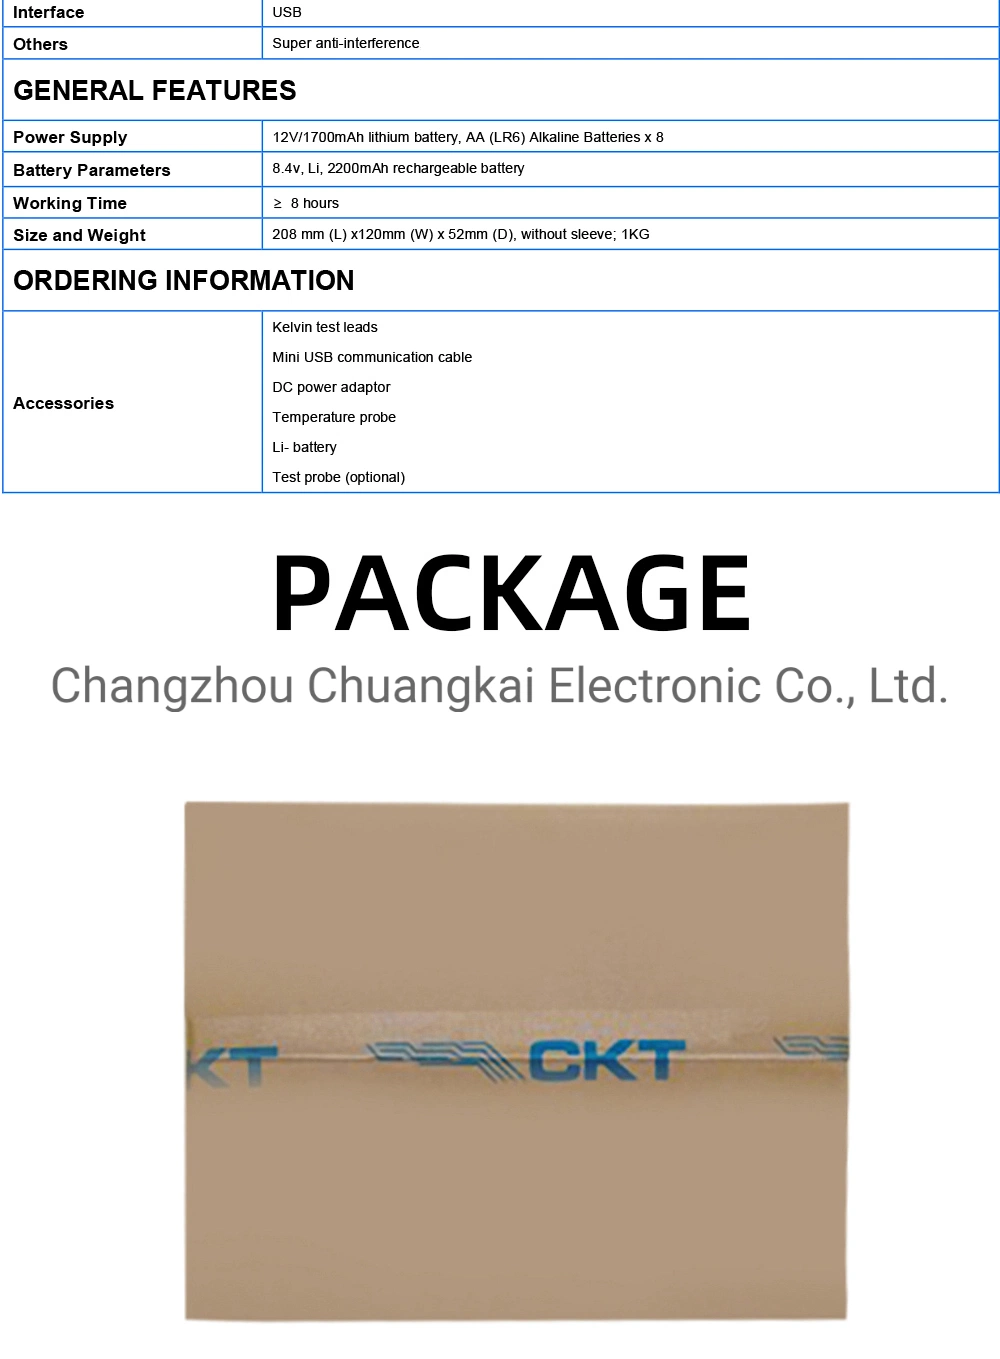 Ckt3554n Digital Battery Tester Meter for UPS Online Measurement Under Working Status